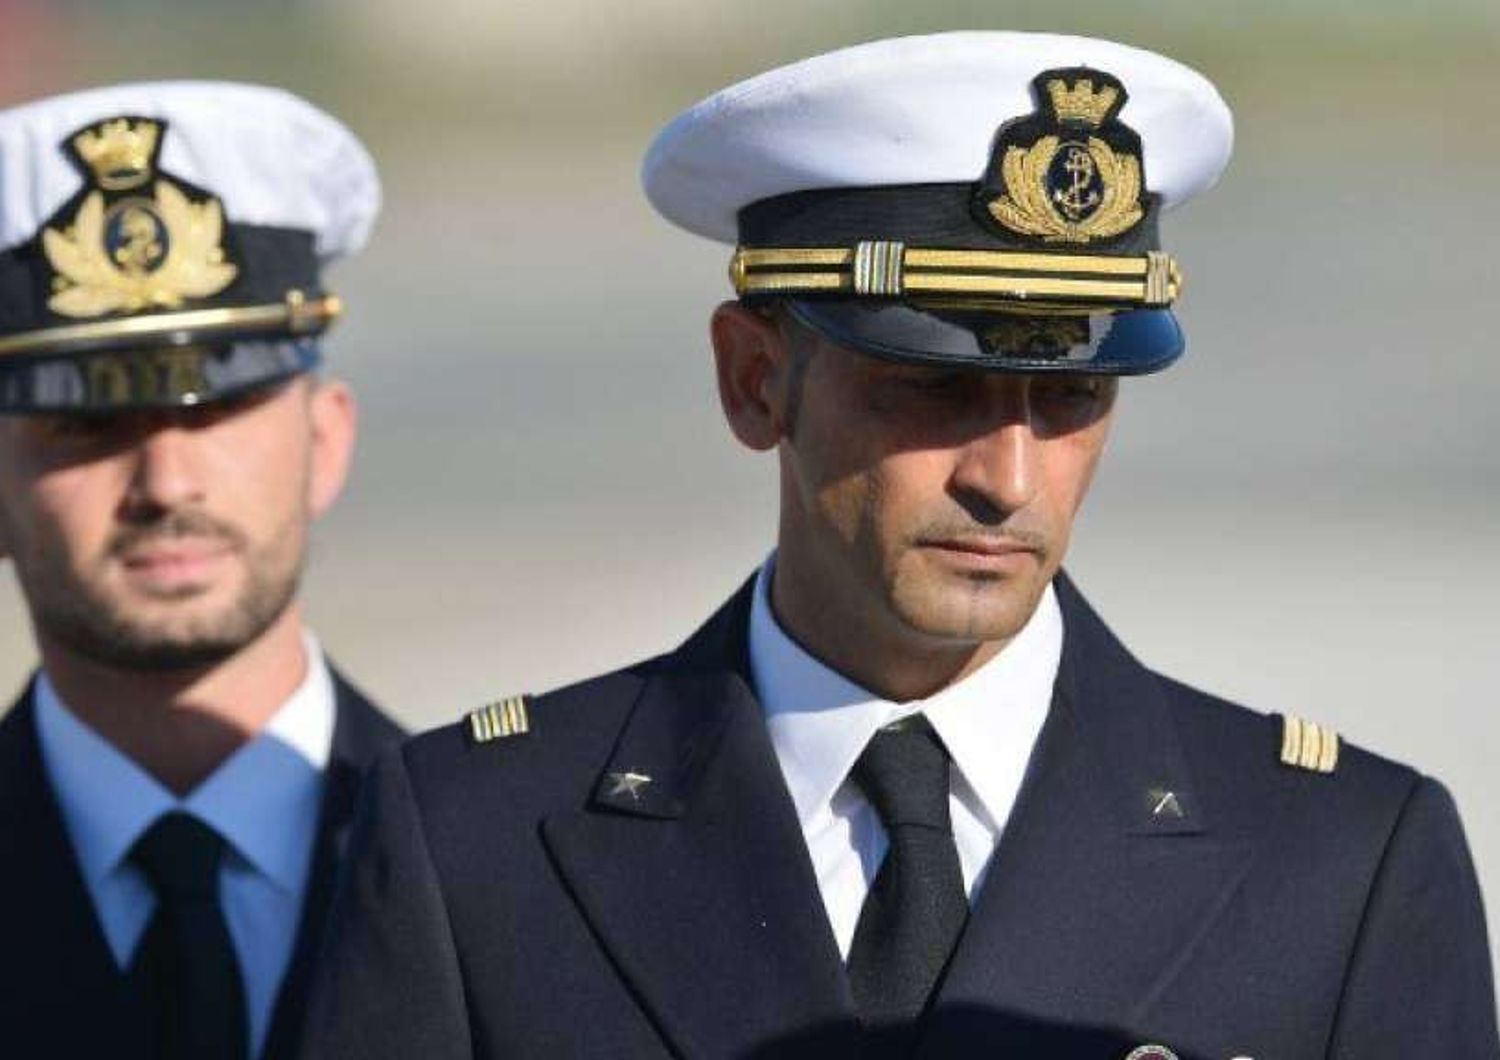 Maro': Girone chiede rientro Italia, Latorre prolungare soggiorno